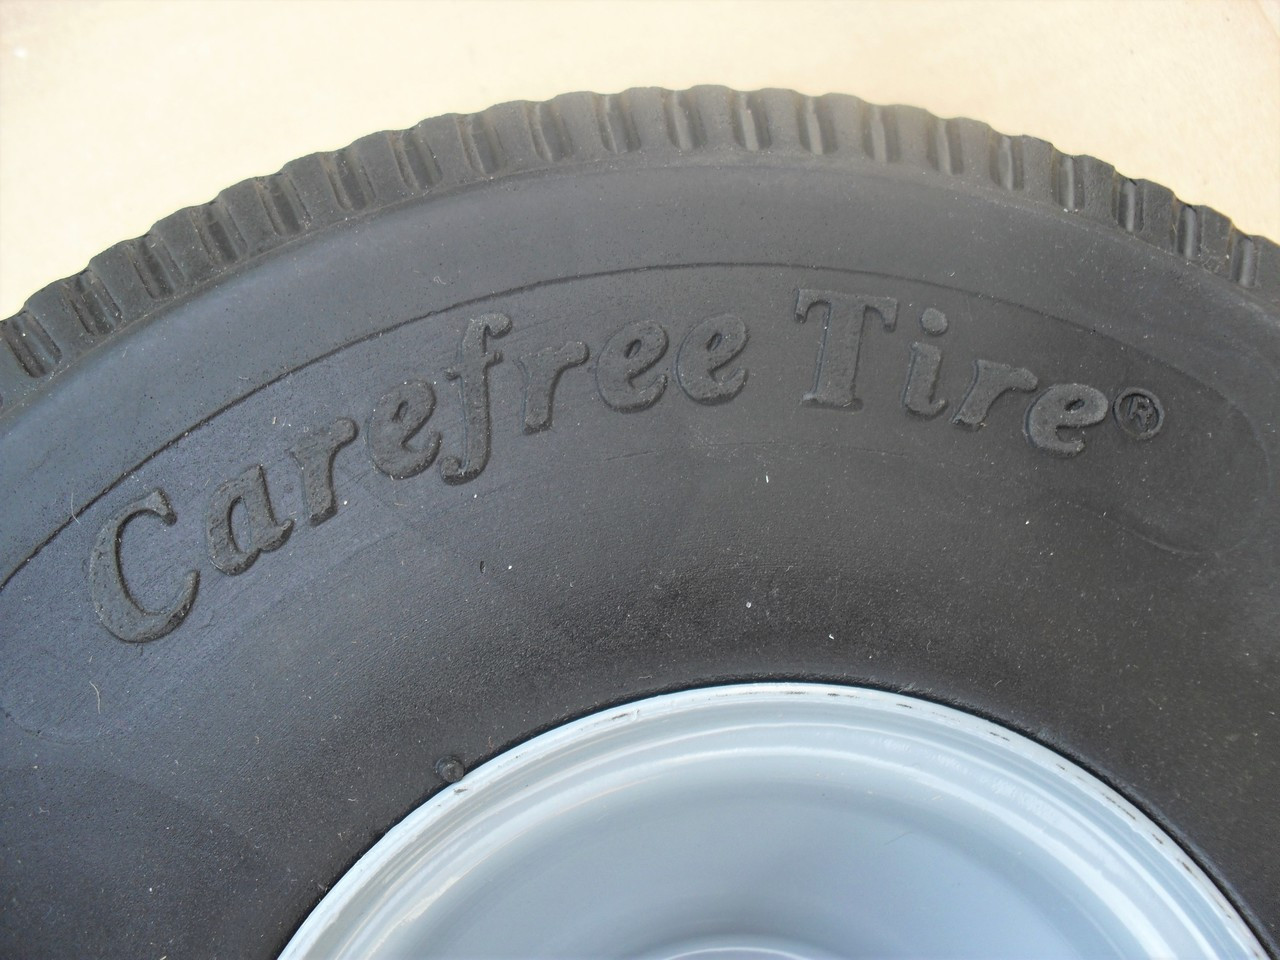 Wheel Tire for Little Wonder Blower 4.10 x 3.50 - 4, 4164205 Solid Foam Flat Free 410/350-4